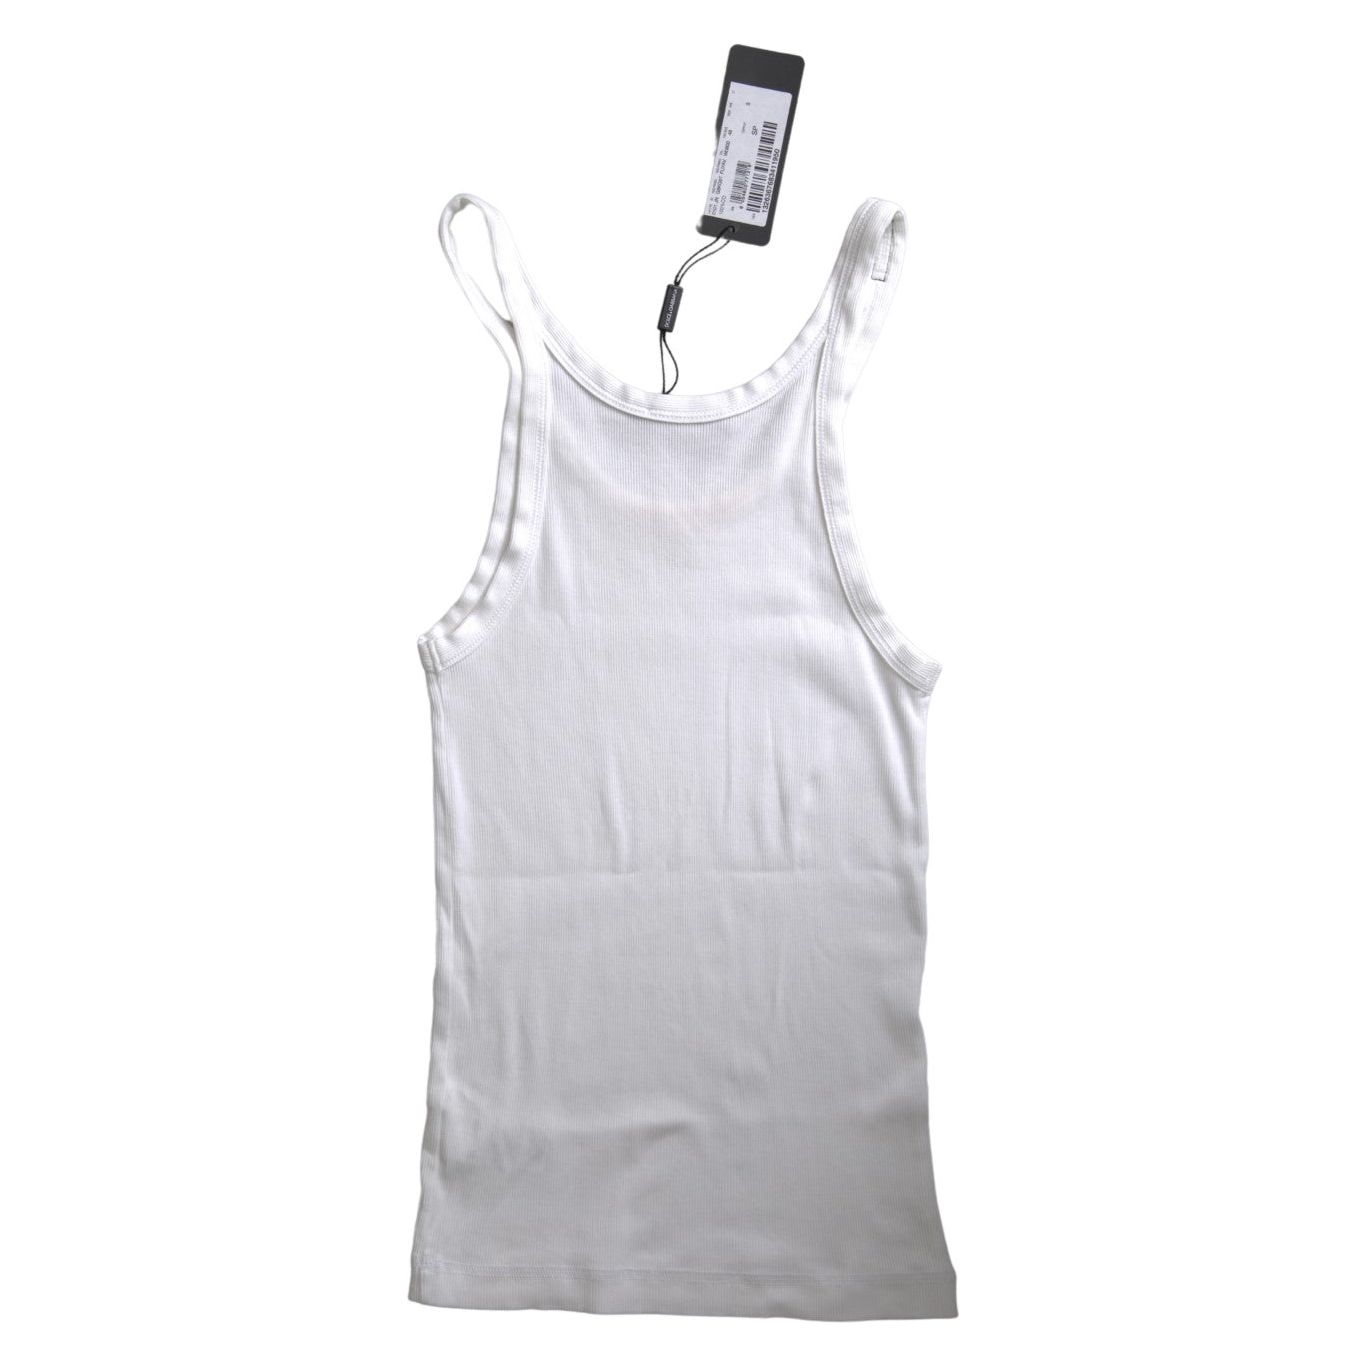 Dolce & Gabbana Elegant White Cotton Tank Top white-cotton-sleeveless-underwear-tank-top